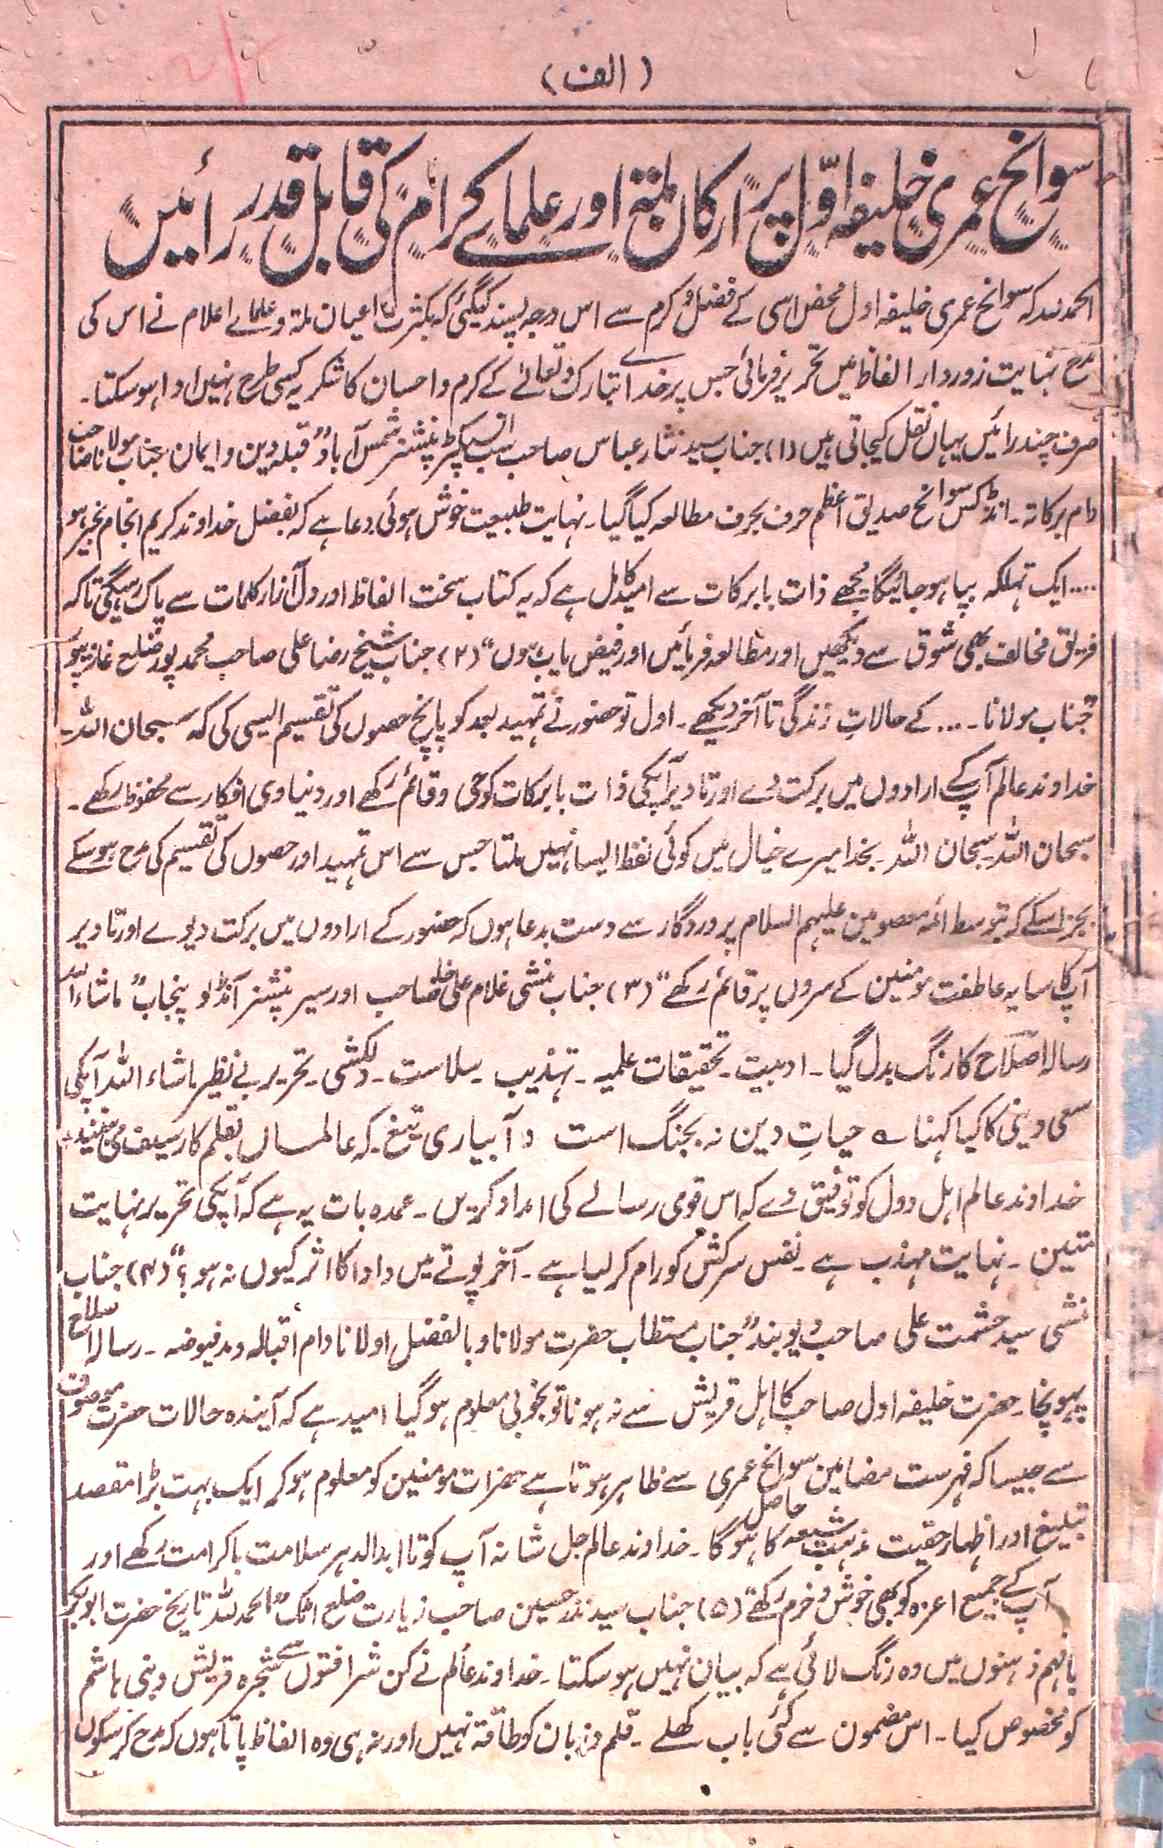 Hazrat Abu Bakar